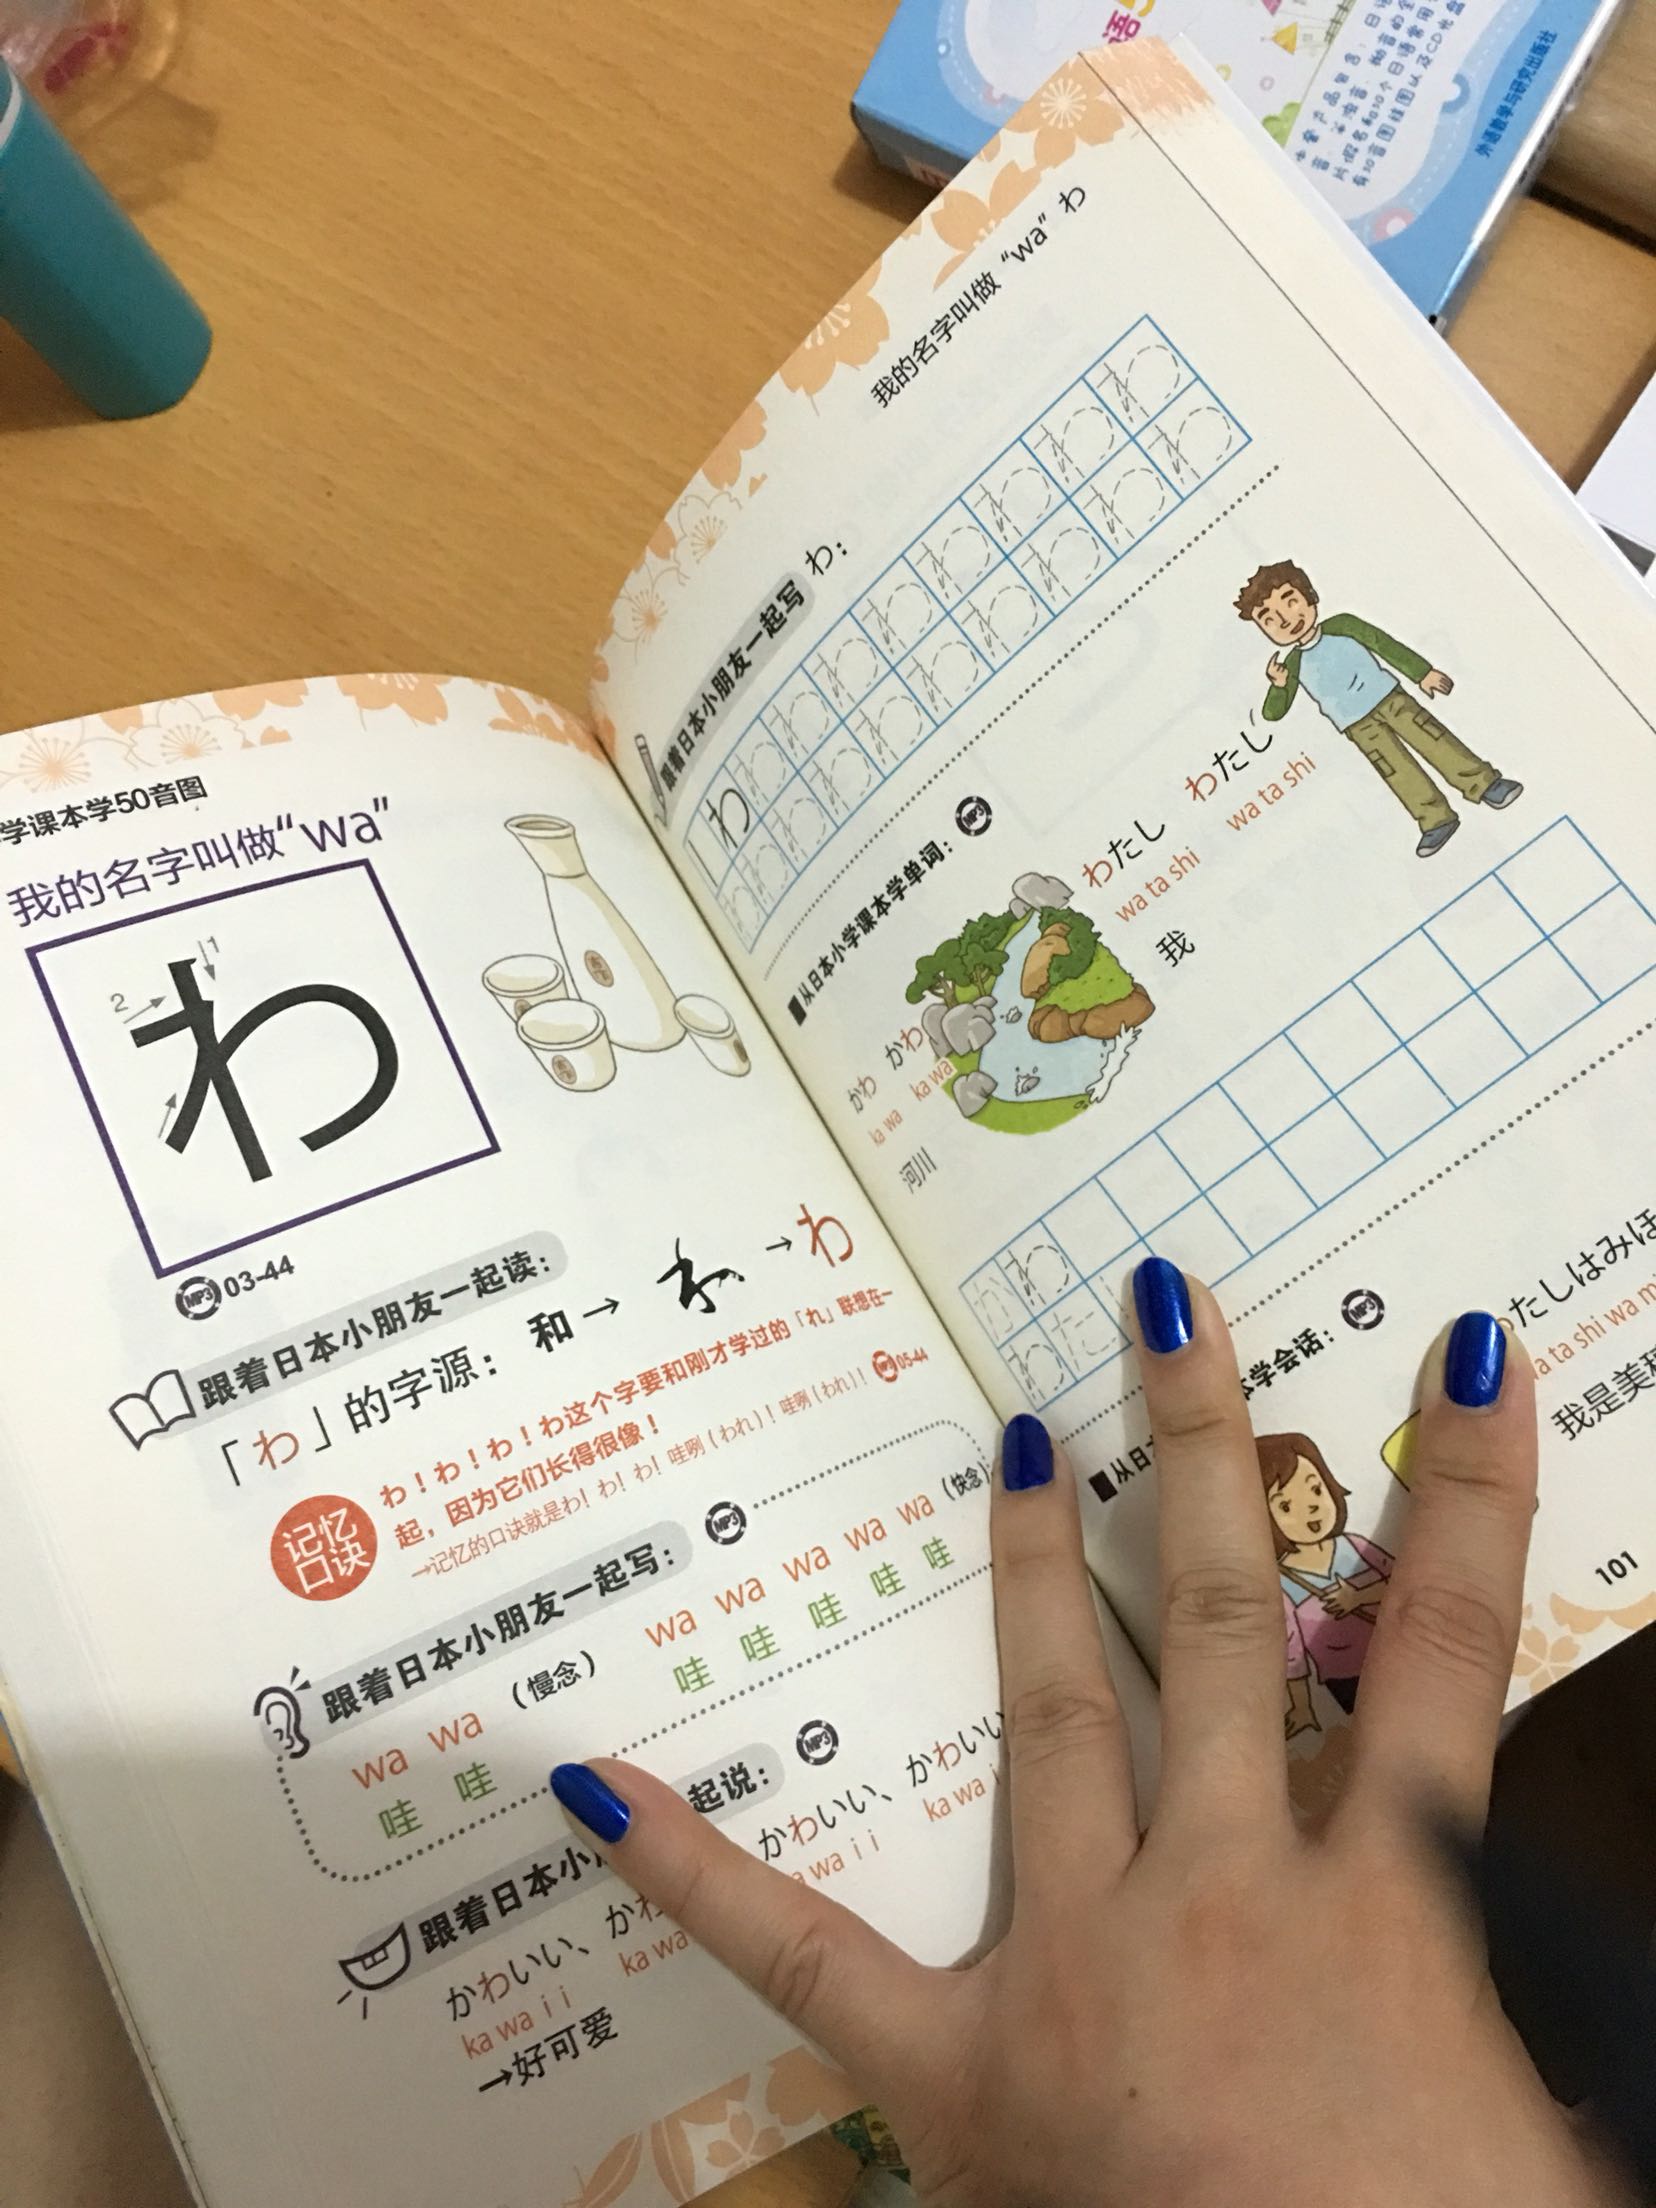 快递非常滴迅速，昨天下午下单今天中午就到了。书本很可爱，蛮适合小孩子学日语的，因为图片不少，很可爱